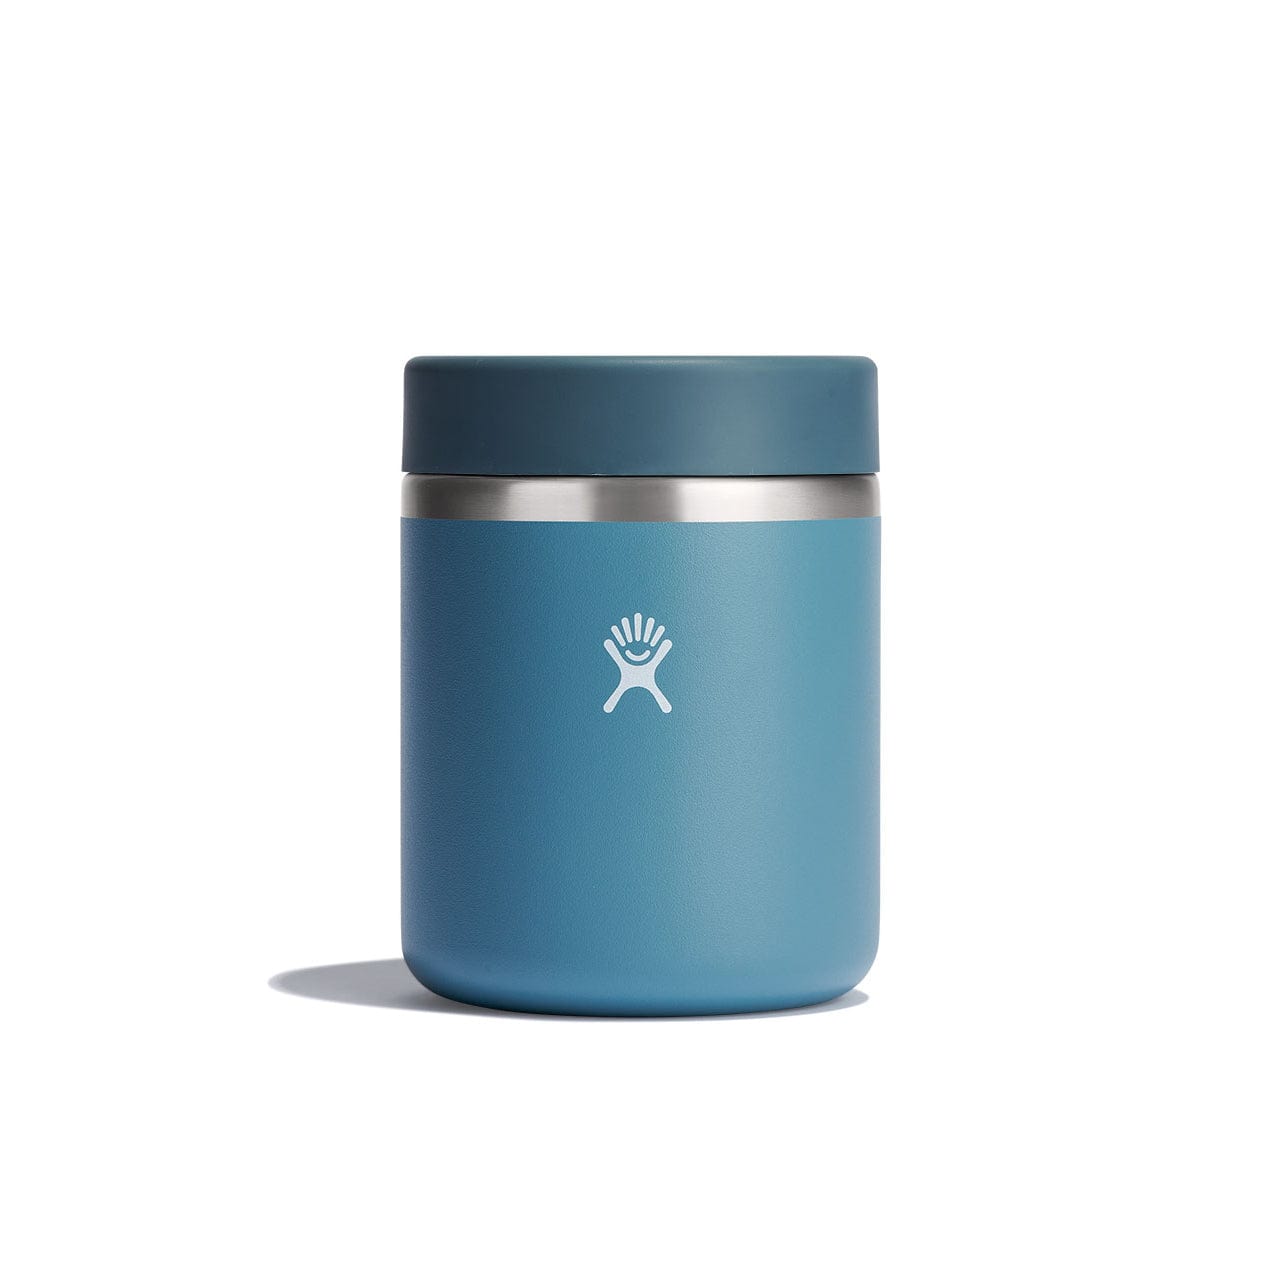 Hydro Flask 28 oz. Insulated Food Jar – Campmor